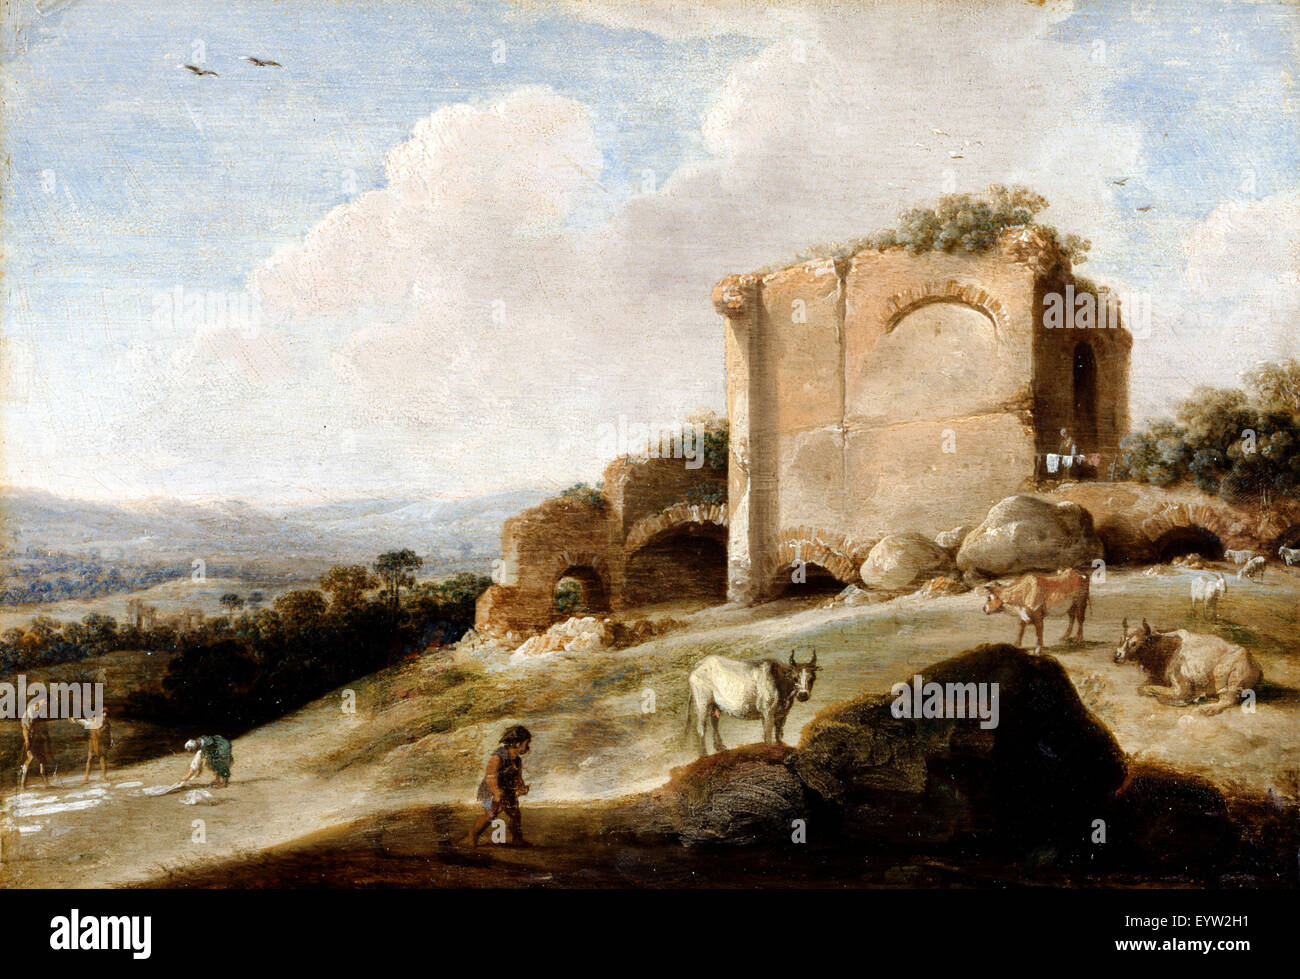 Carel Cornelisz de Hooch, paesaggio con una rovina romana 1620-1638 Olio su pannello. Dulwich Picture Gallery di Londra, Inghilterra. Foto Stock